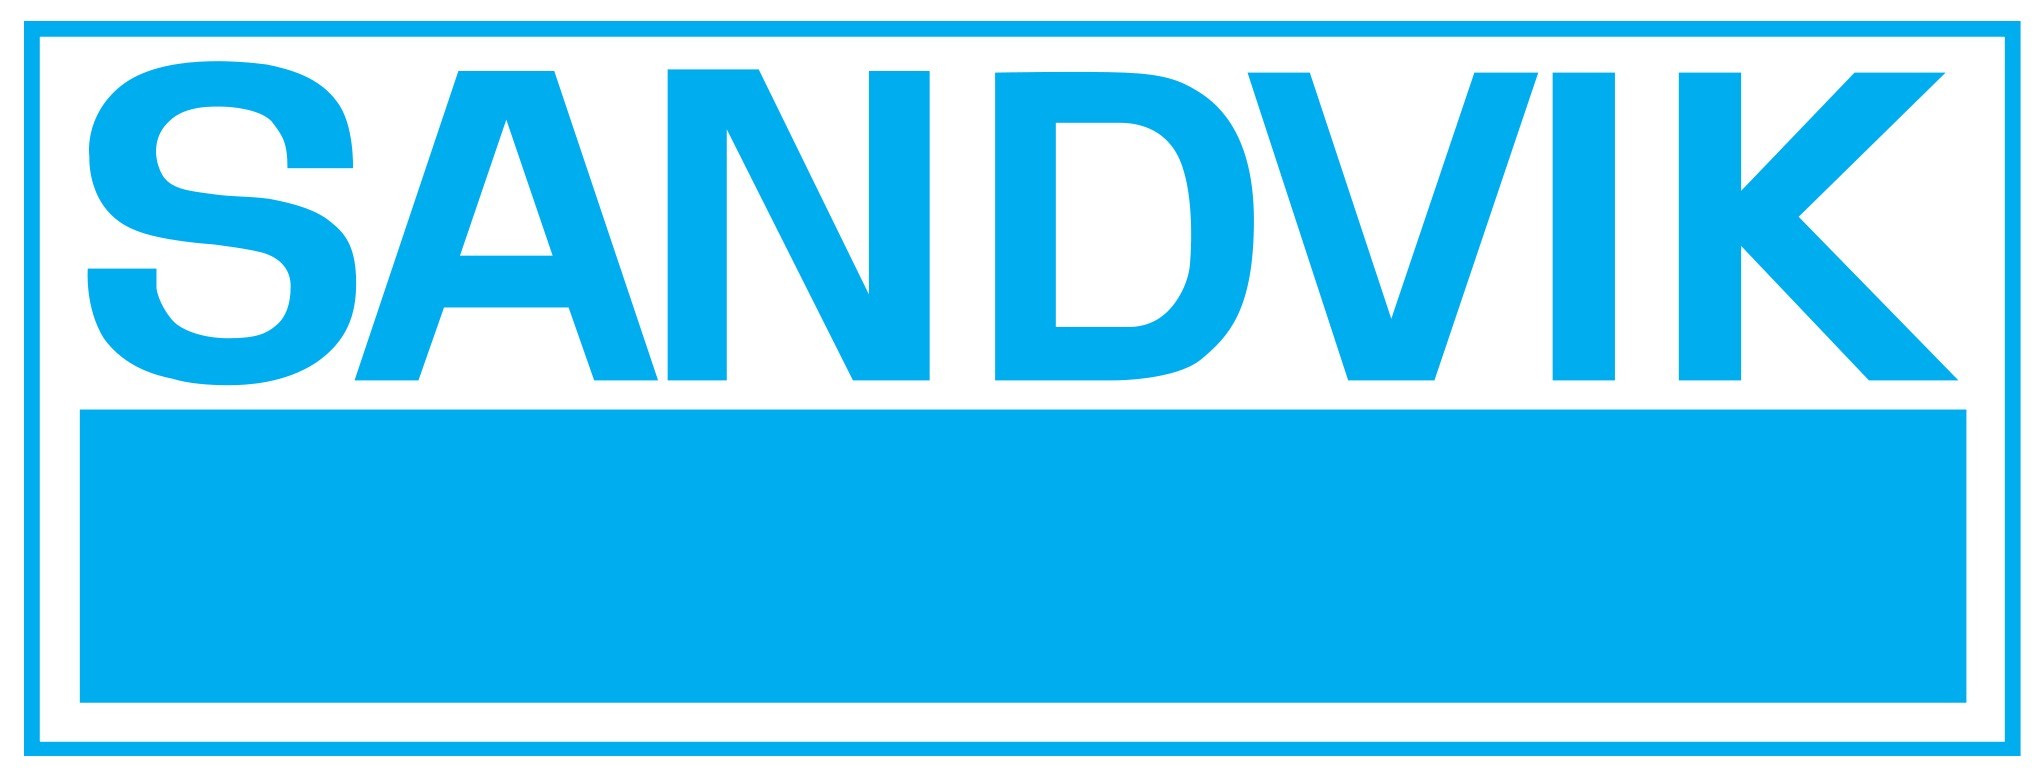 9 sandvic logo - SANDVIK